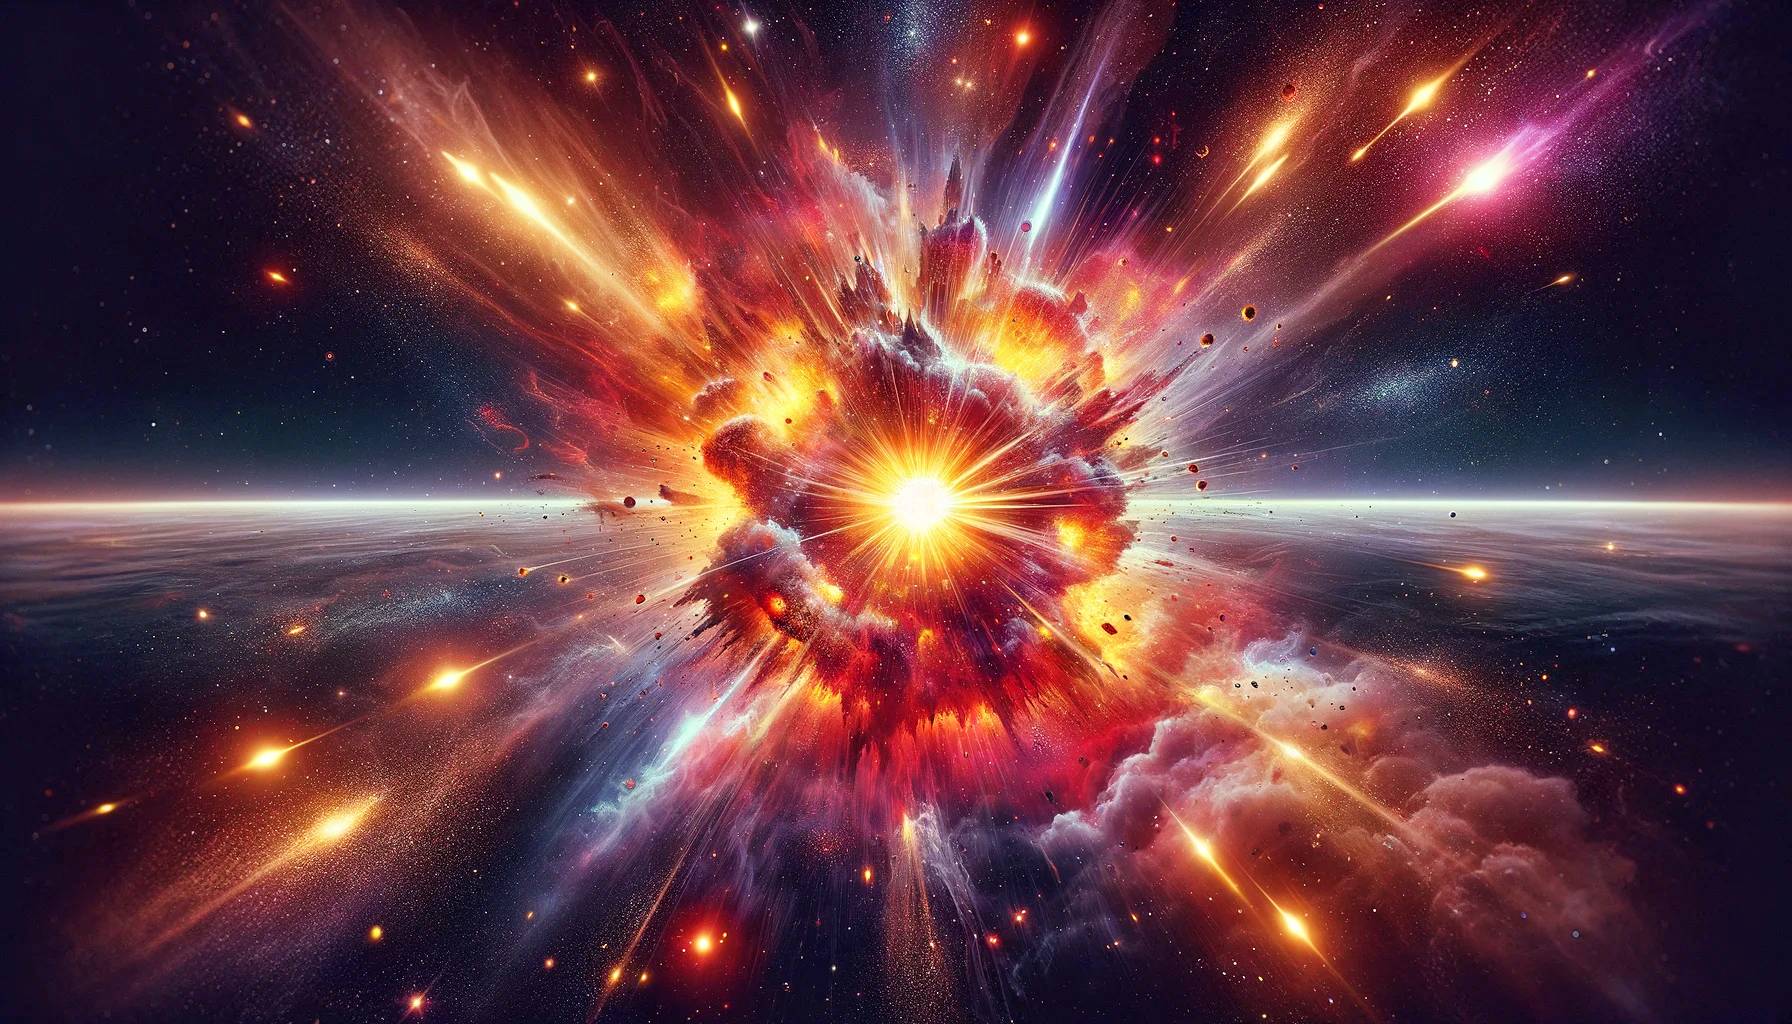 Die Explosion eines Sterns widerspricht den Gesetzen der Physik und lässt Forscher ohne Erklärung zurück